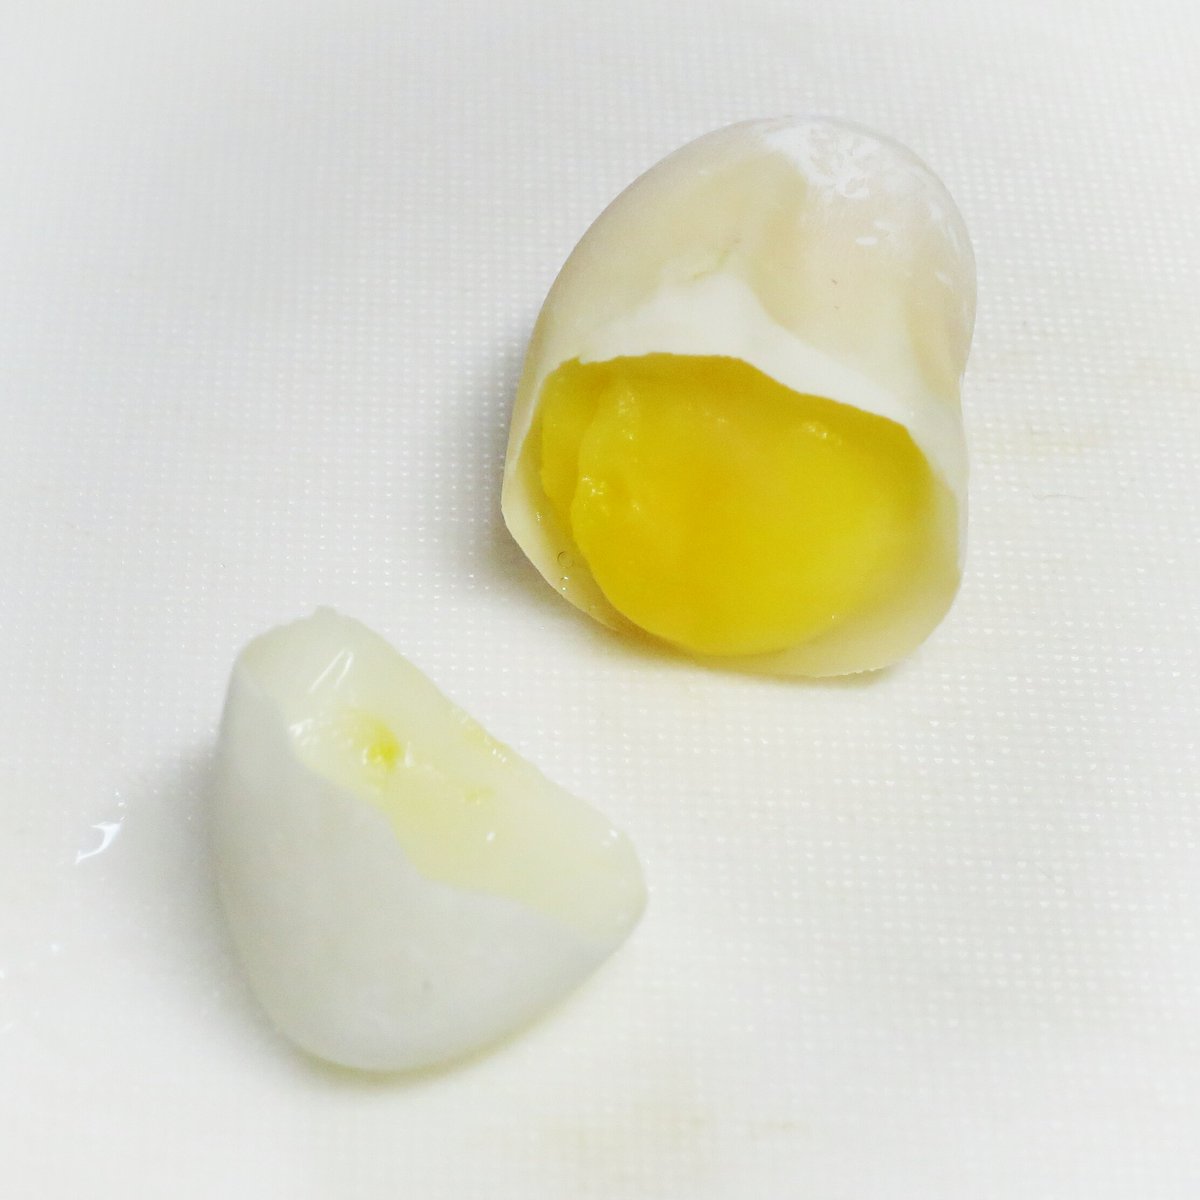 渡仁 とにん うちのカメコが よかったらこれ食べて と産んでくれた卵 無精卵 ボイルして美味しくいただきました 中身はほぼ黄身しかなく 味は薄味のウズラの卵みたい 塩を少々かけて 亀の卵